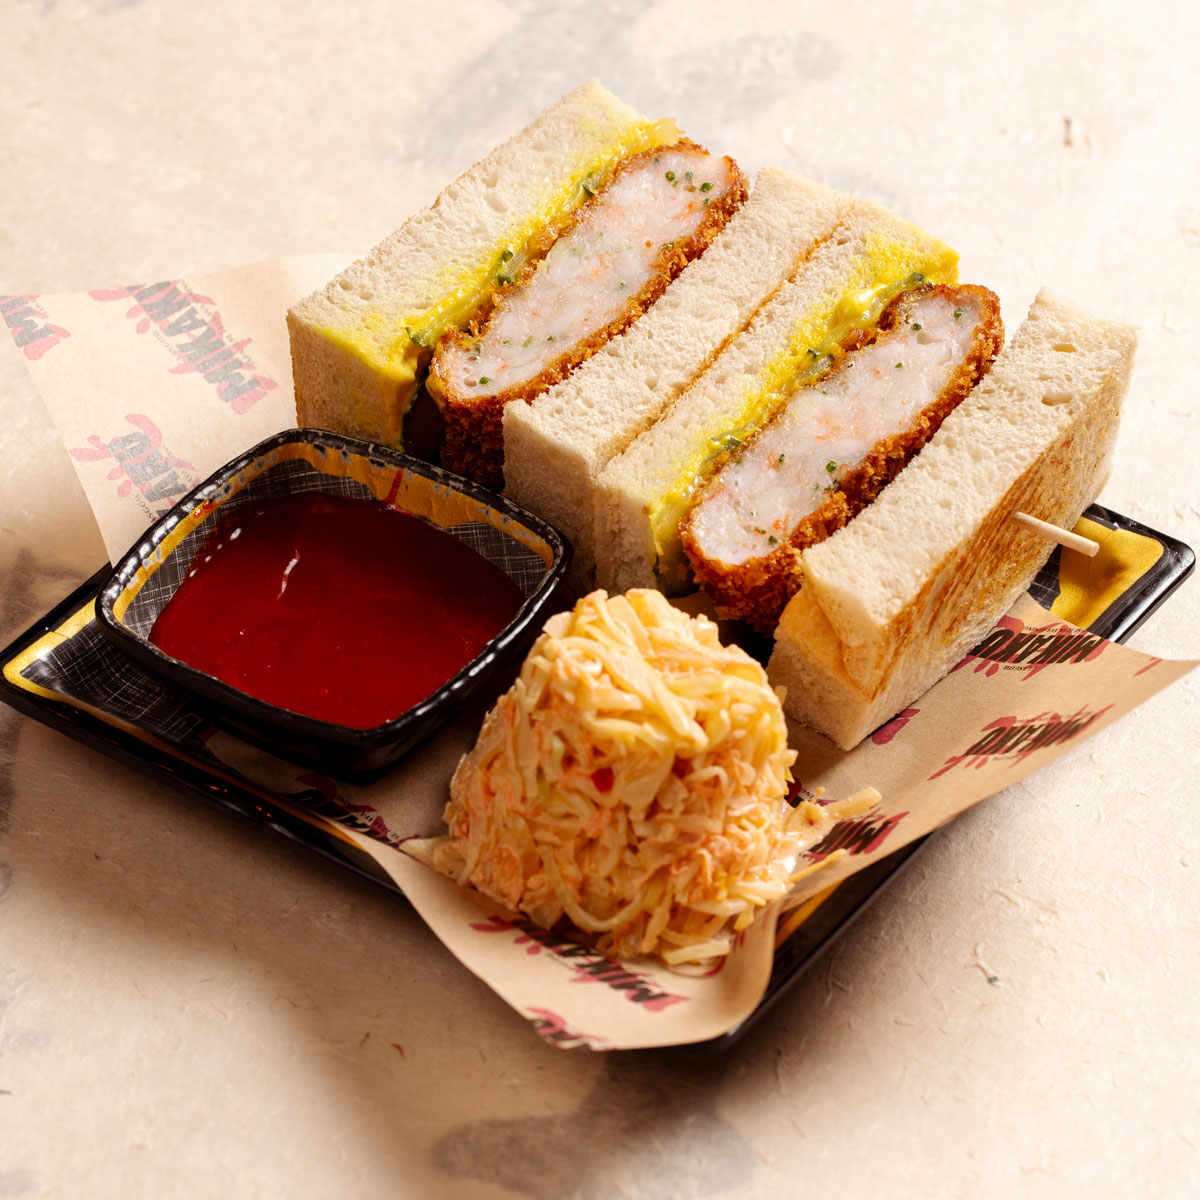 An asian street food sandwich